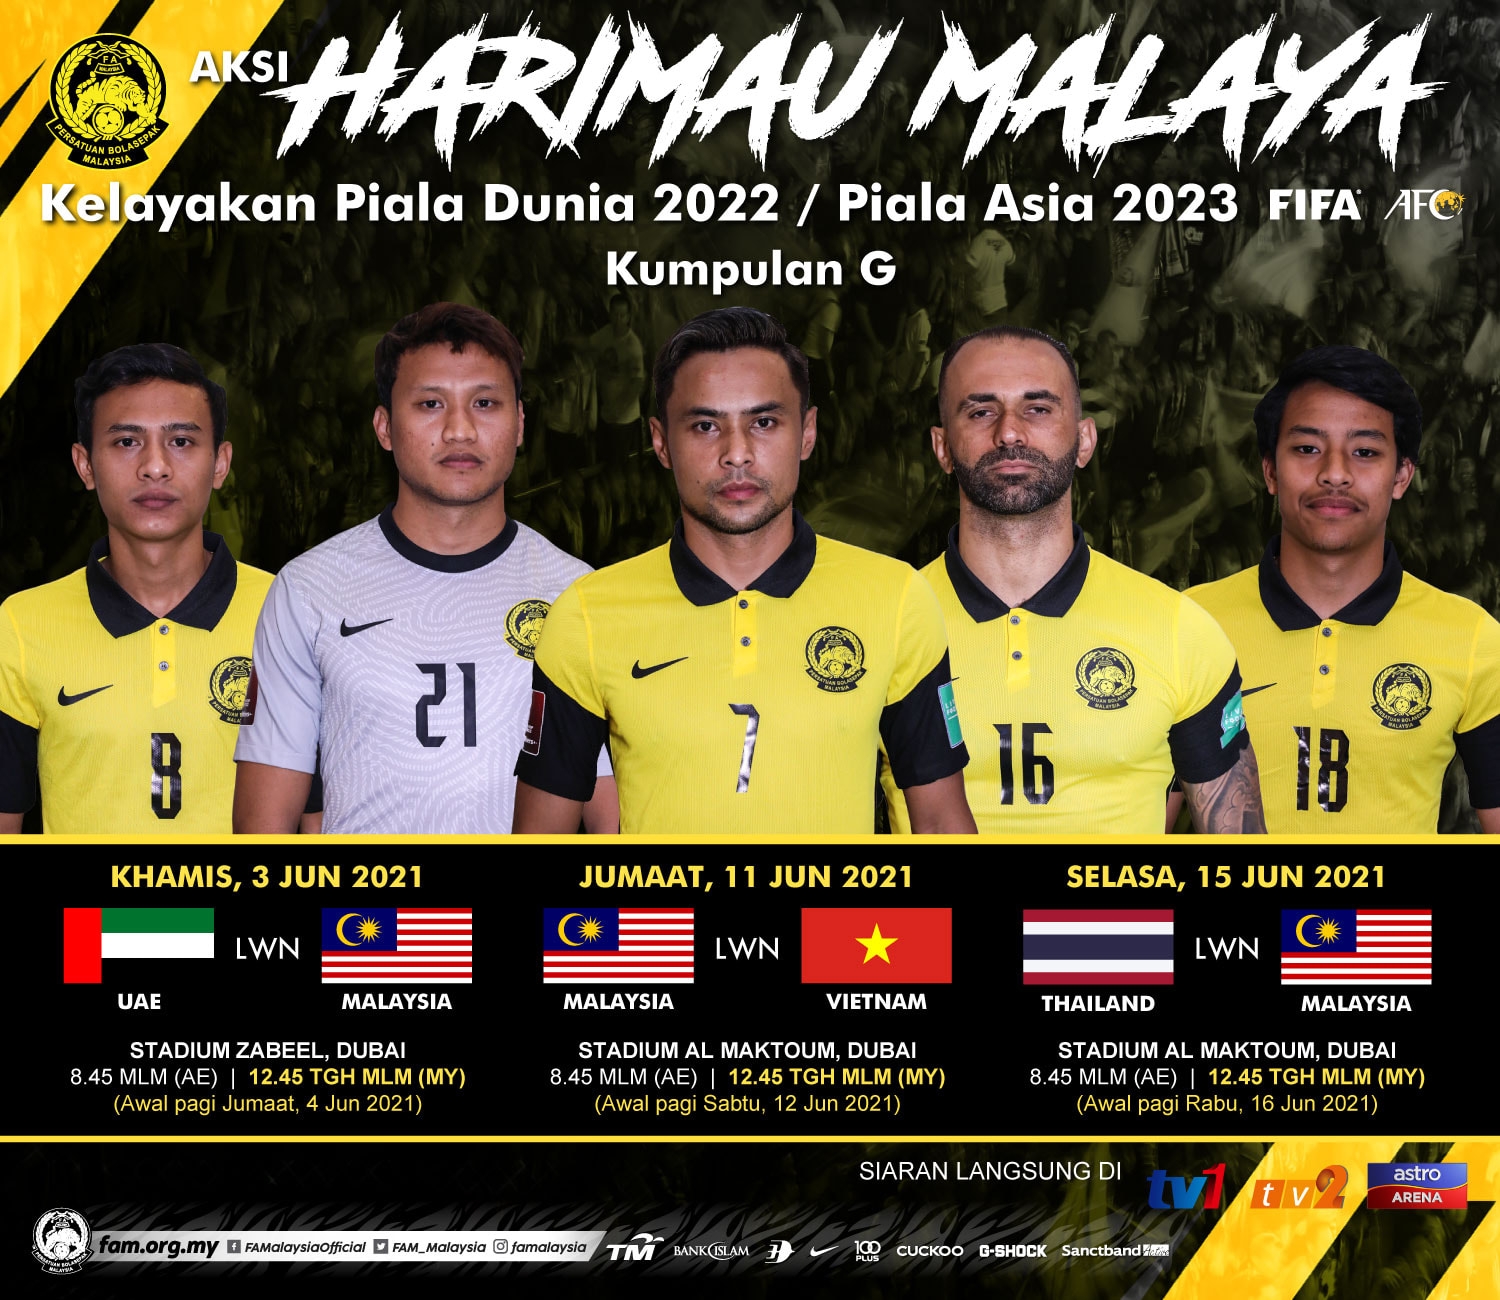 Tarikh malaysia vs thailand 2021